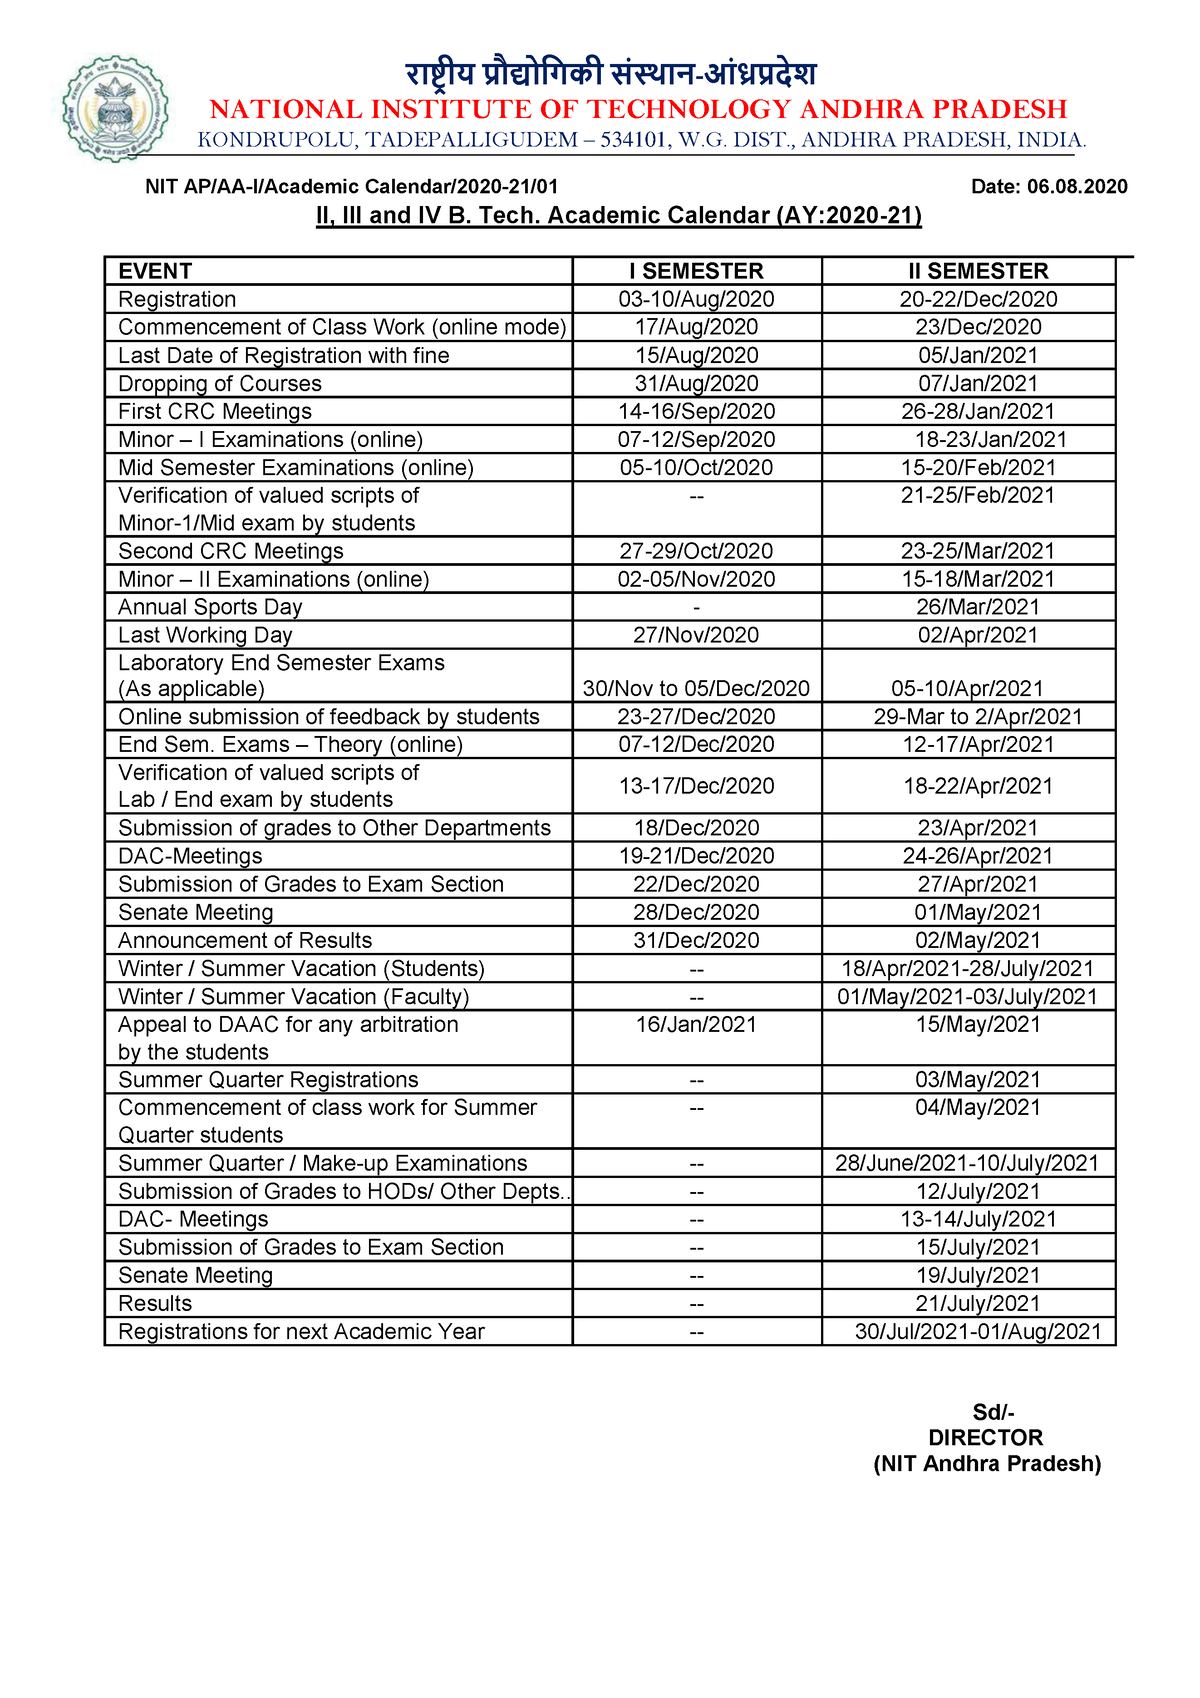 Academic Calendar 2020 21 राष्ट्रीय प्रौद्योगिकी संस्थान आंध्रप्रदेश